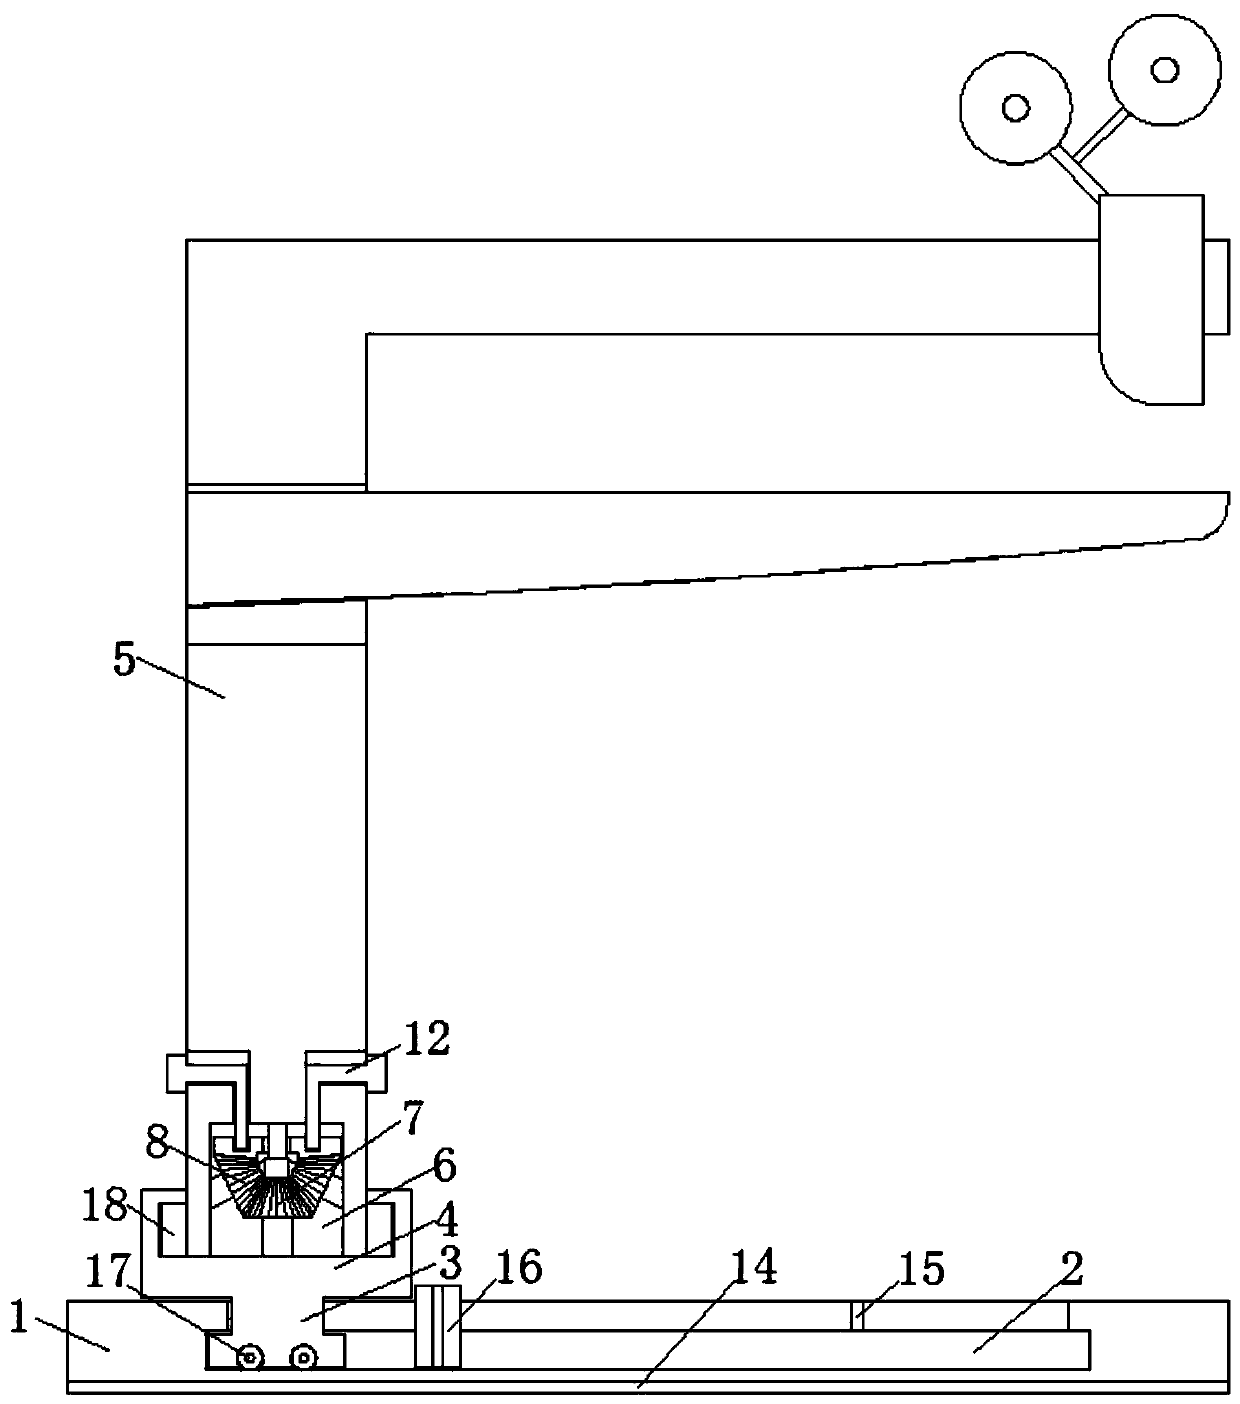 Manual box nailing machine facilitating angle adjustment